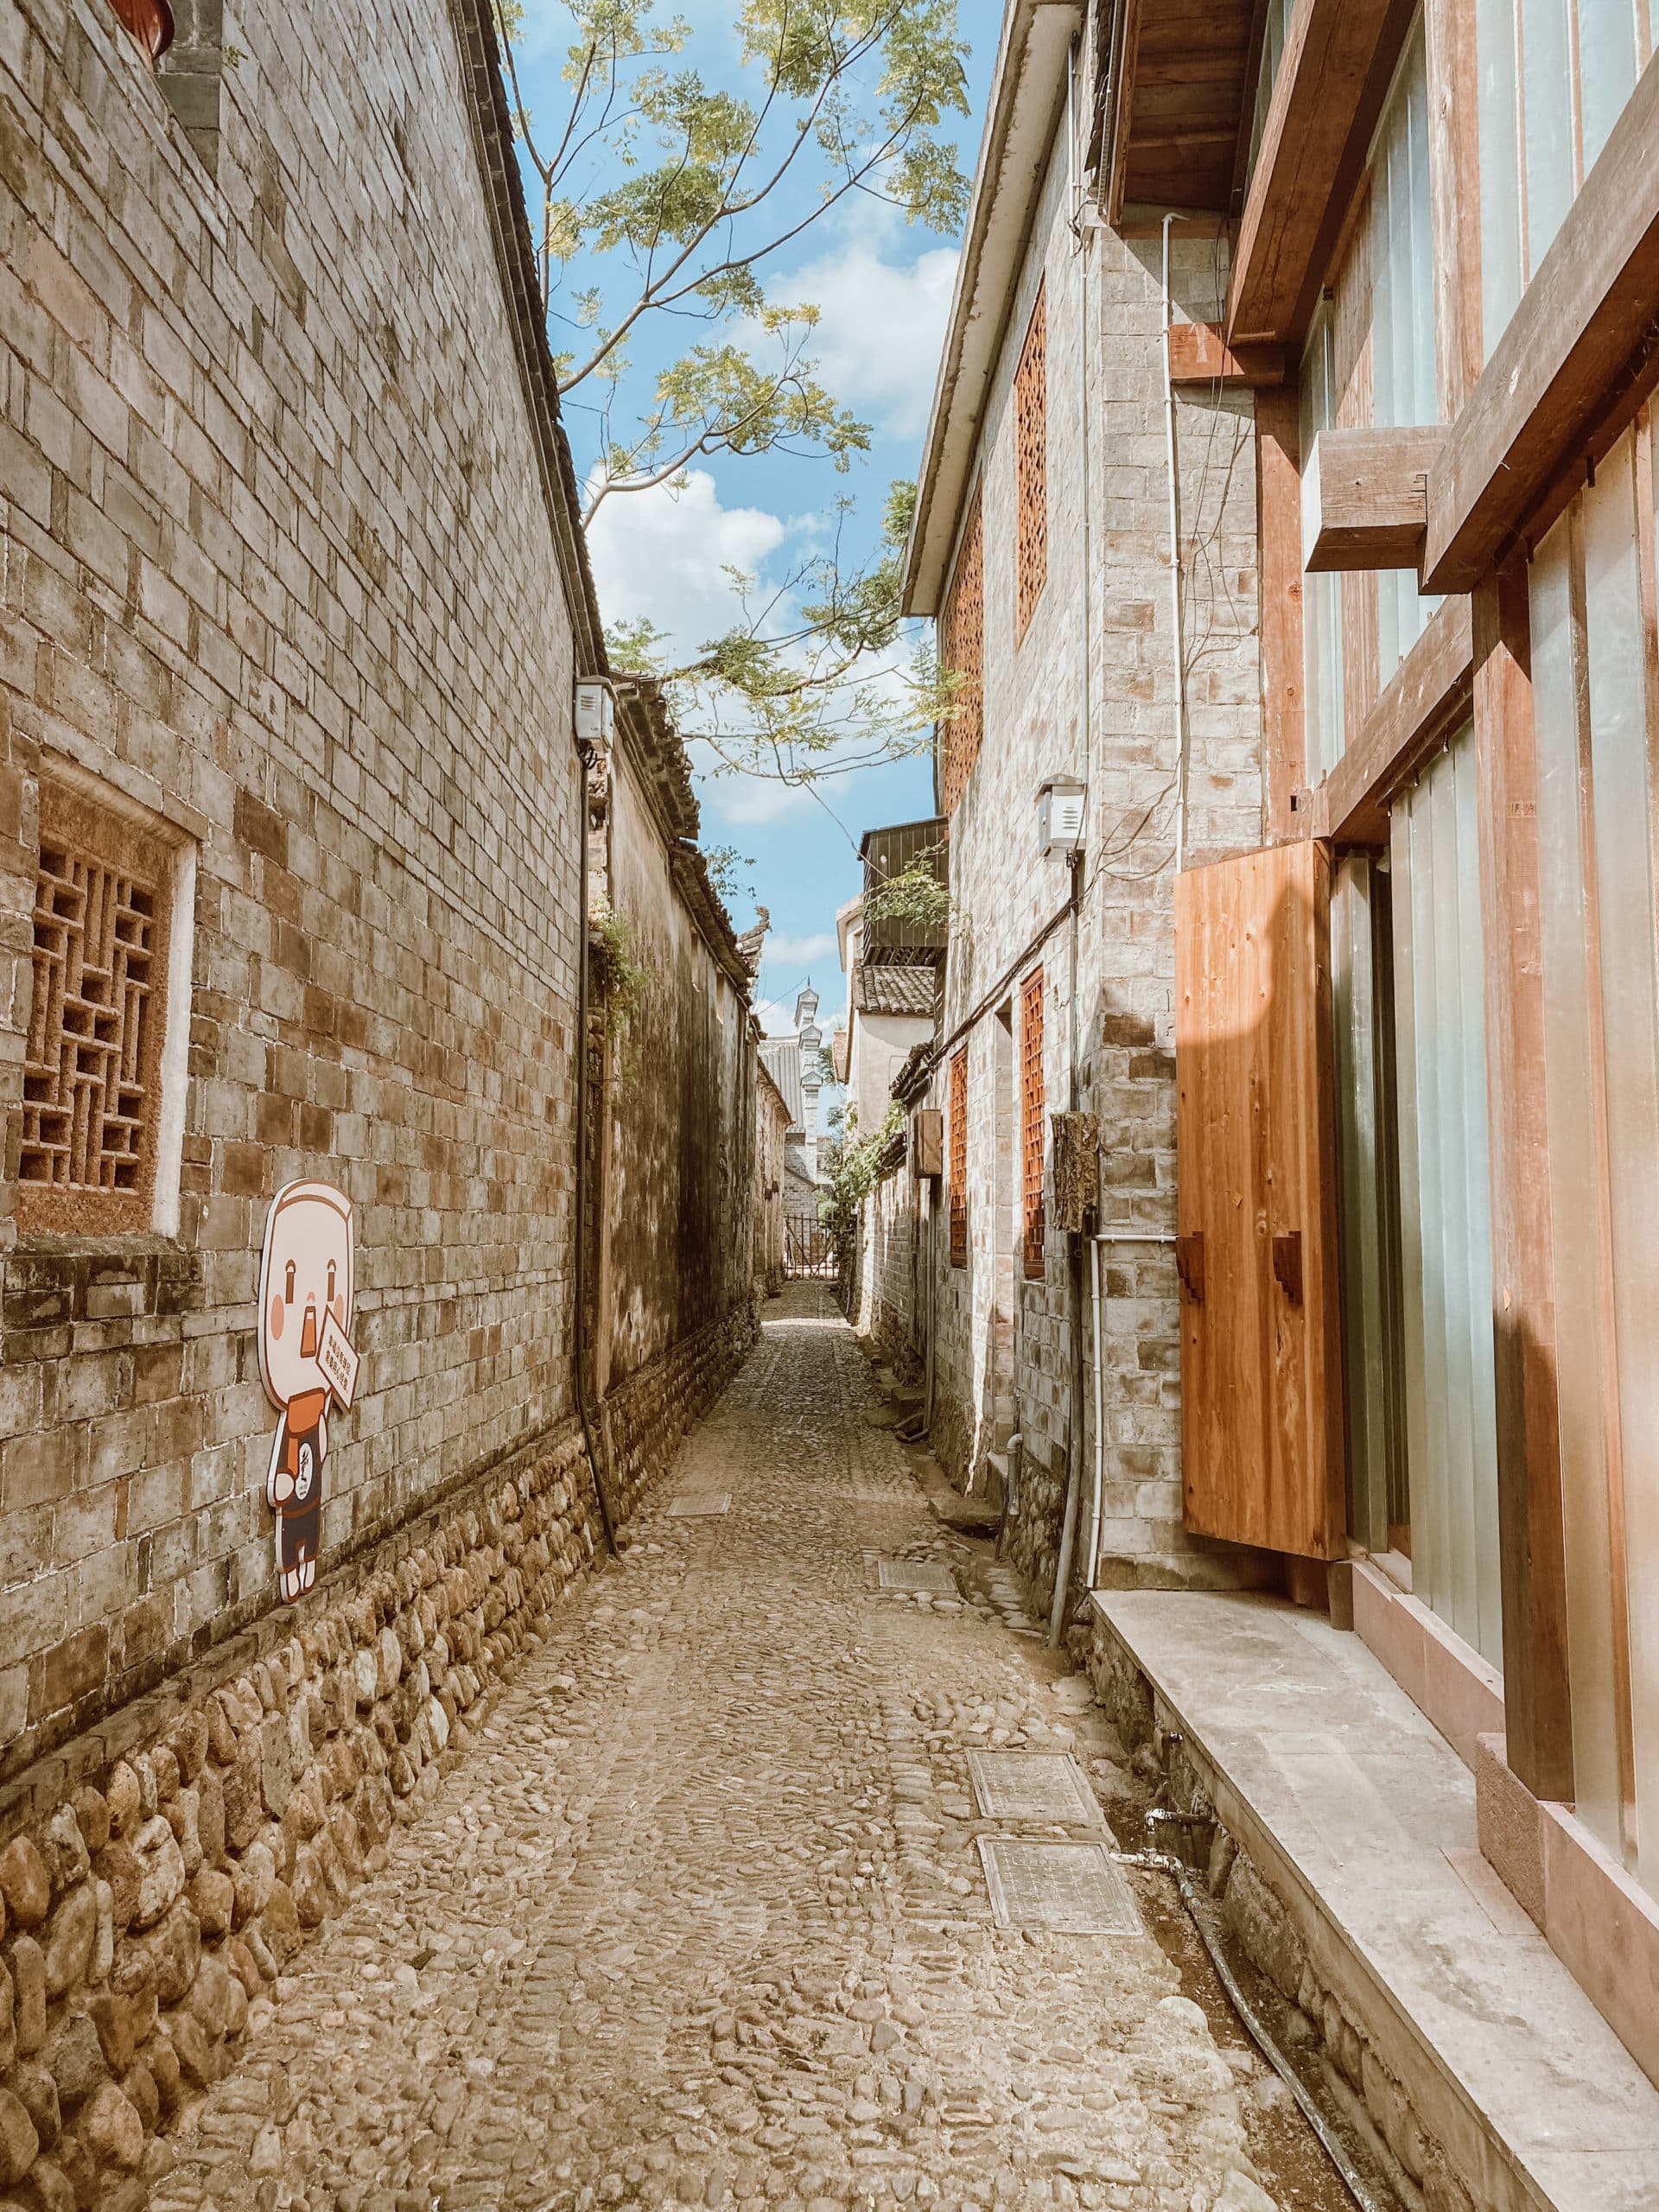 Qiantong Ancient Town – Ningbo’s Hidden Village